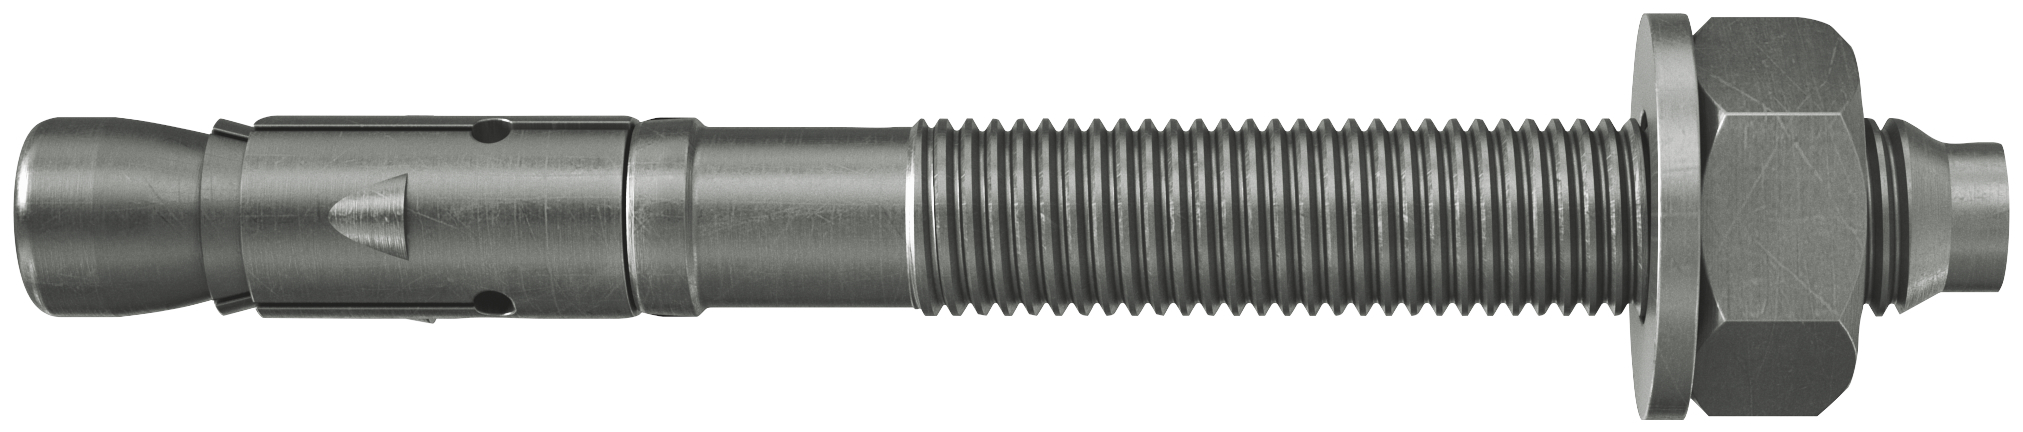 fischer Tassello acciaio FAZ II 12/60 A4 (20 Pz.) L'ancorante ad espansione ad alte prestazioni per carichi statici su calcestruzzo fessurato e per applicazioni sismiche. Versione in acciaio inossidabile con classe di resistenza alla corrosione CRC III..